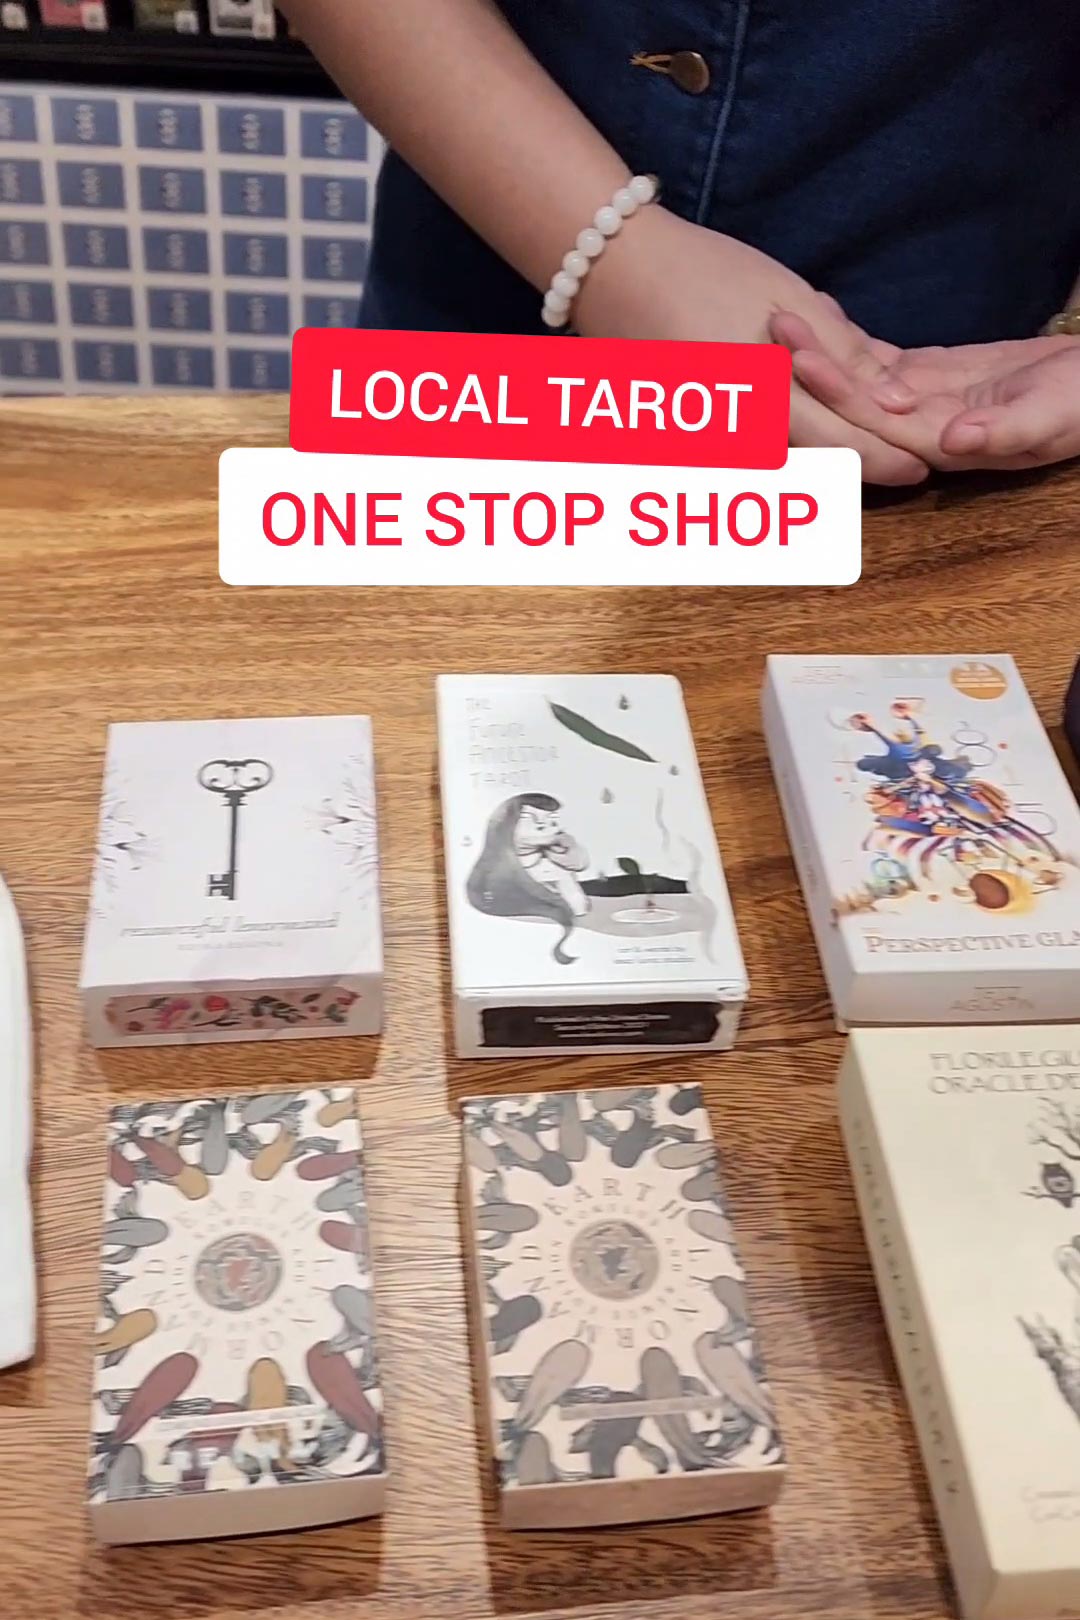 Locally Produced Tarot Shop!